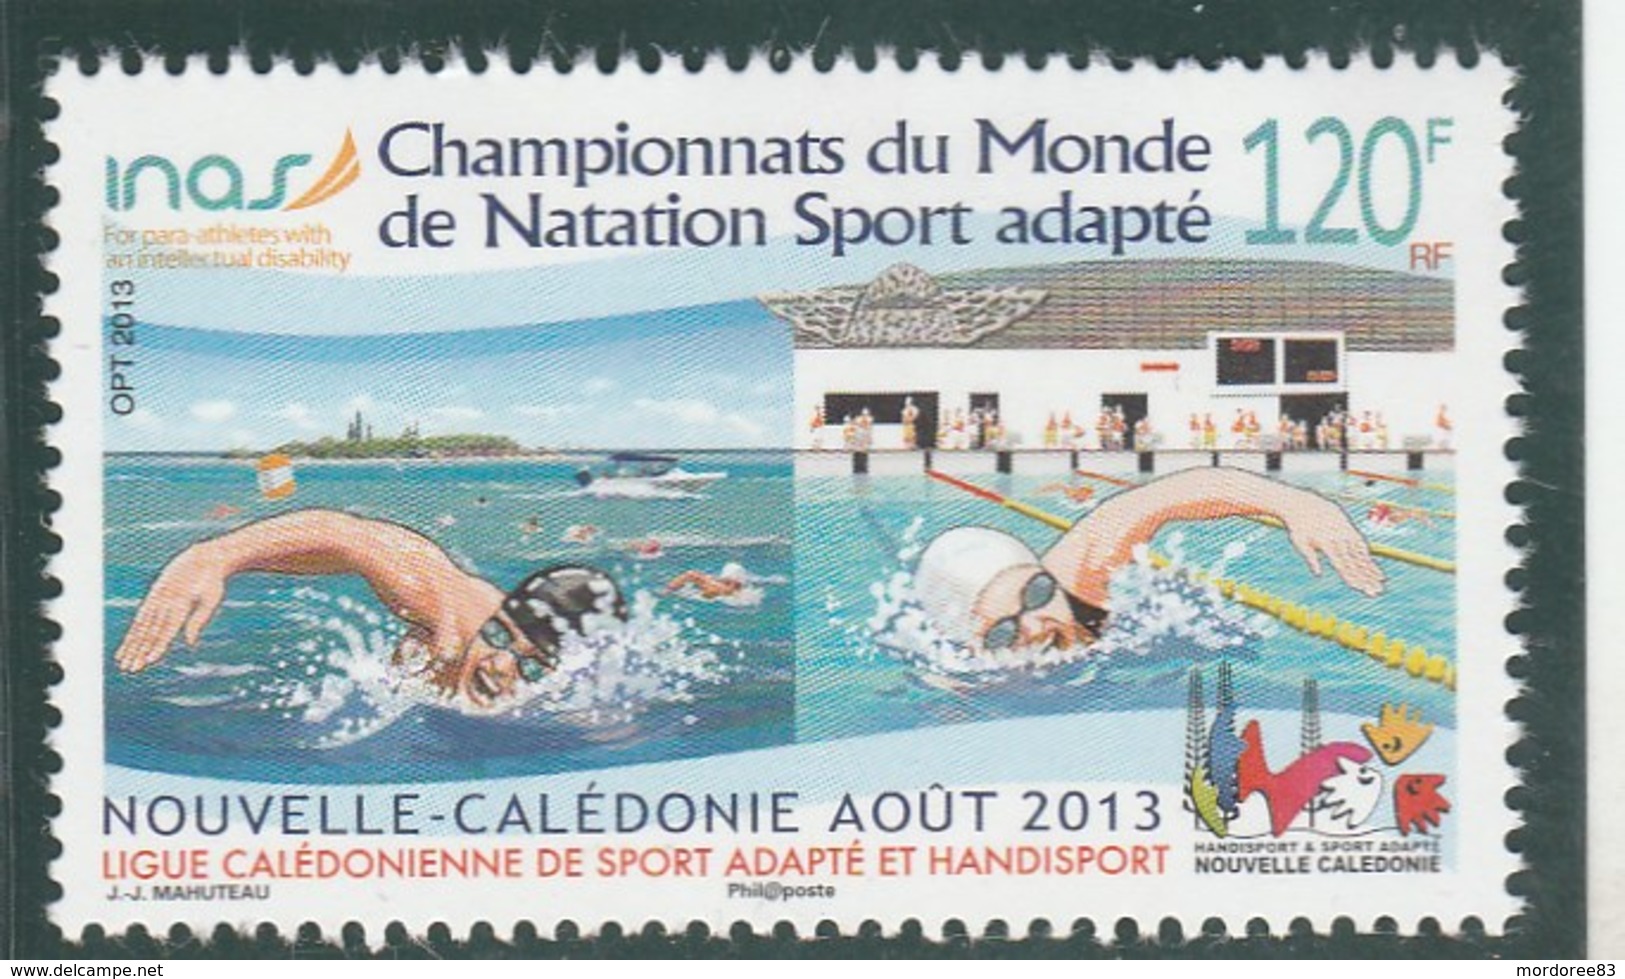 NOUVELLE CALEDONIE - 2013 - CHAMPIONNATS DU MONDE DE NATATION SPORT ADAPTE - NEUF -                       TDA262 - Unused Stamps